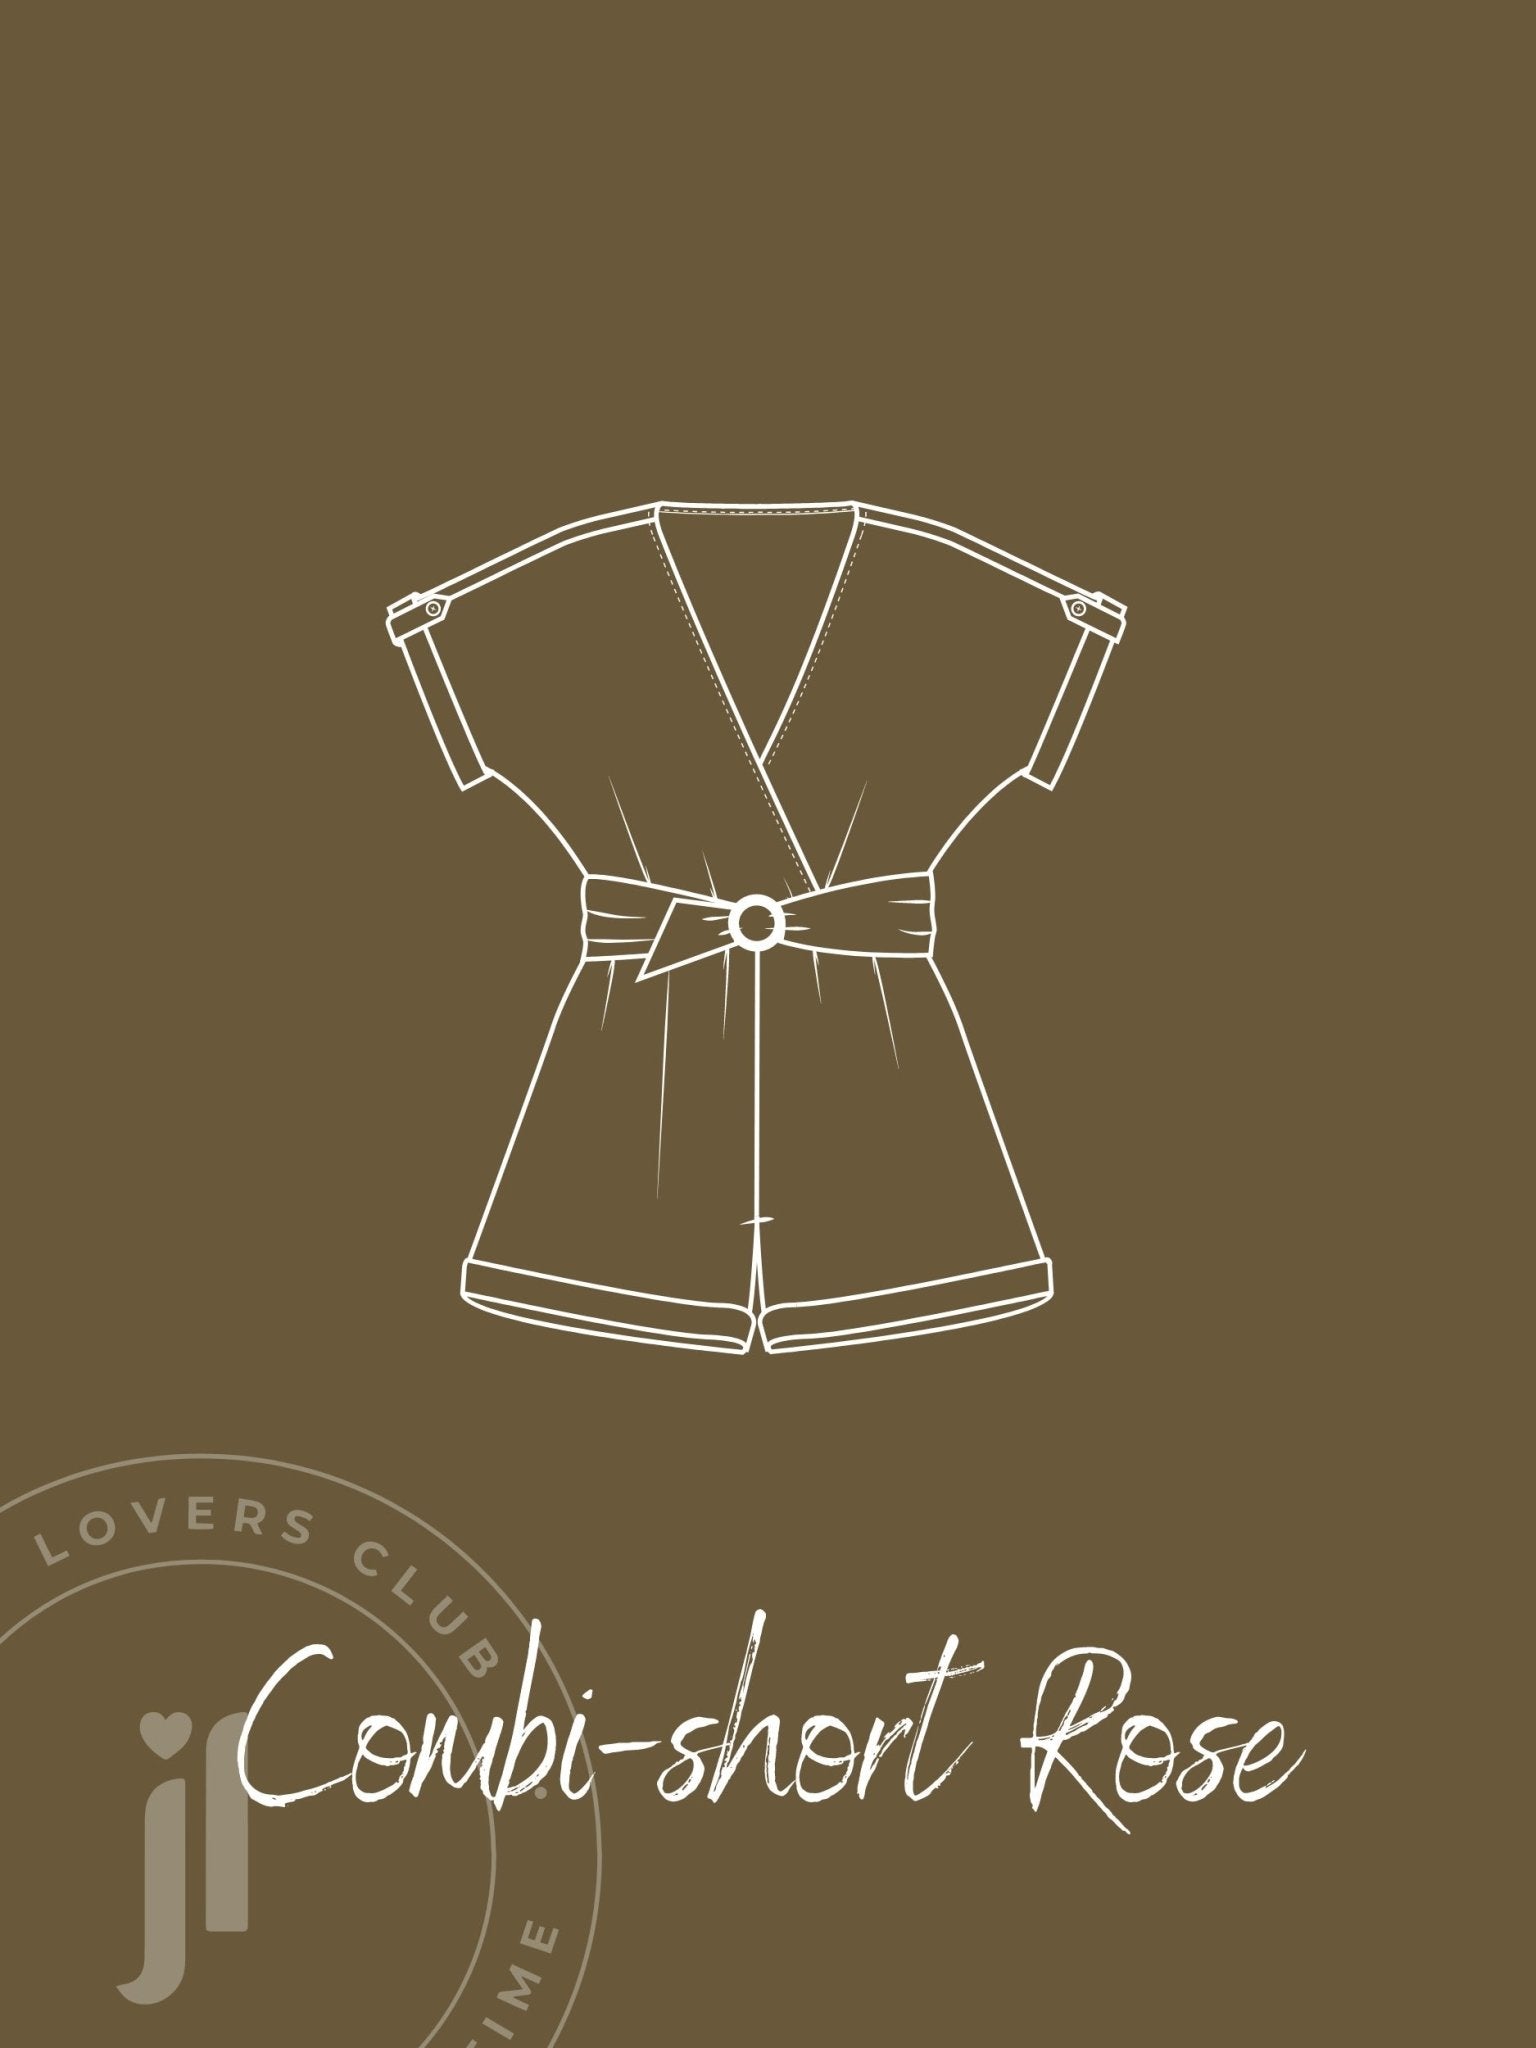 Joli Kit Couture - Combi-short Rose kaki - Joli Lab